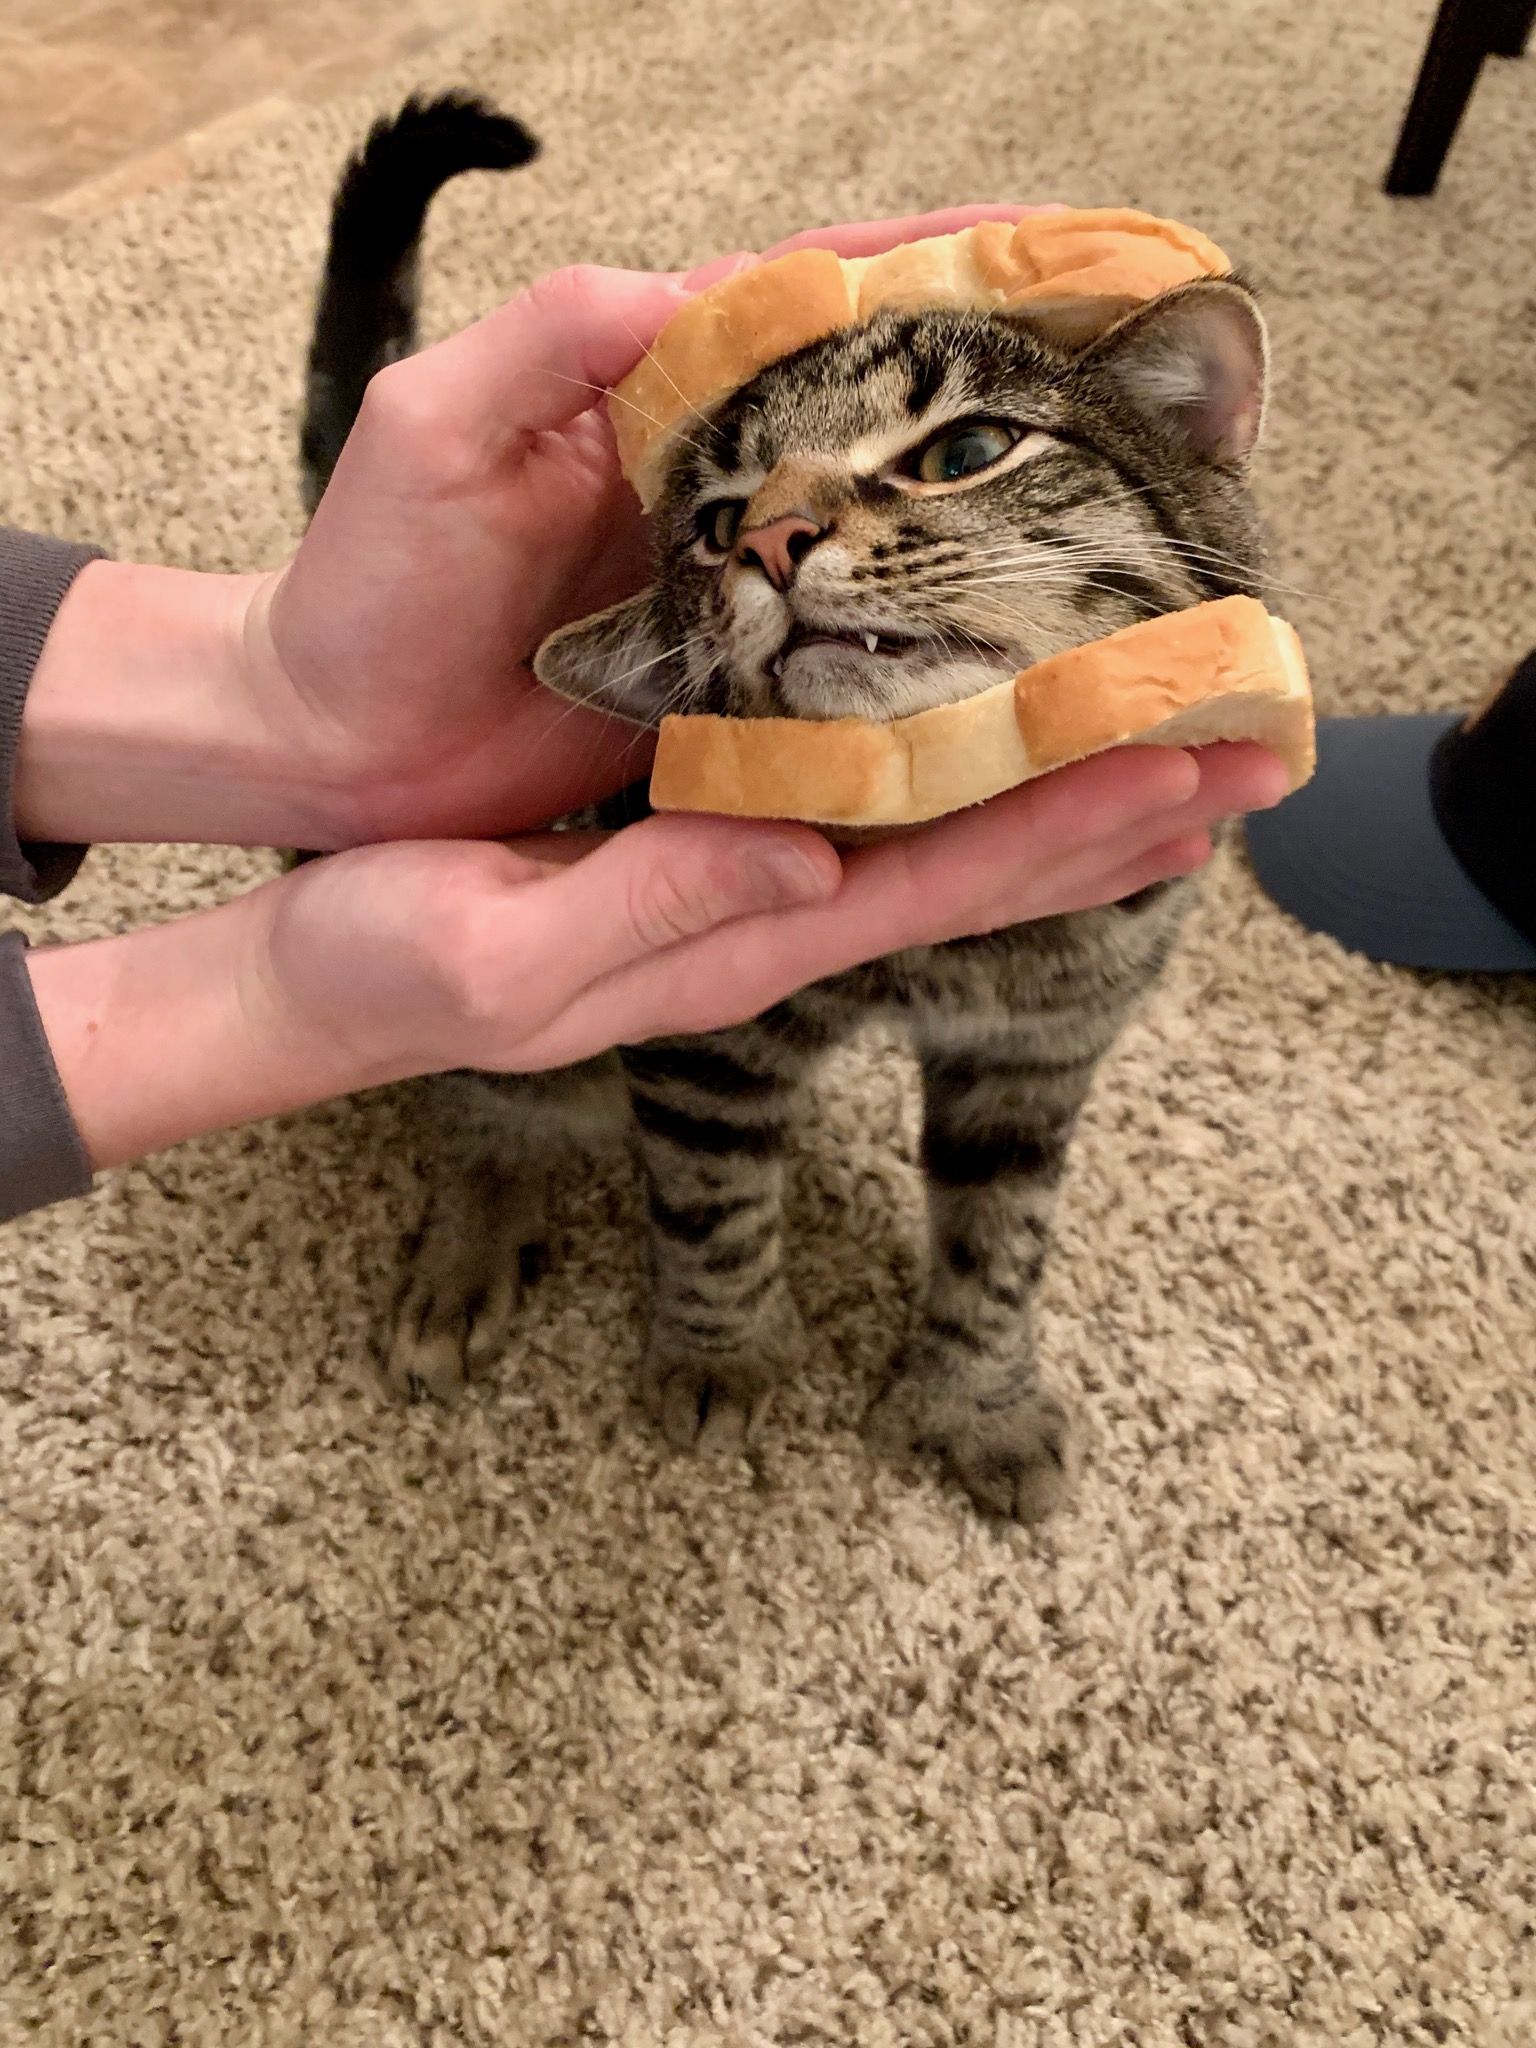 He sandwich.